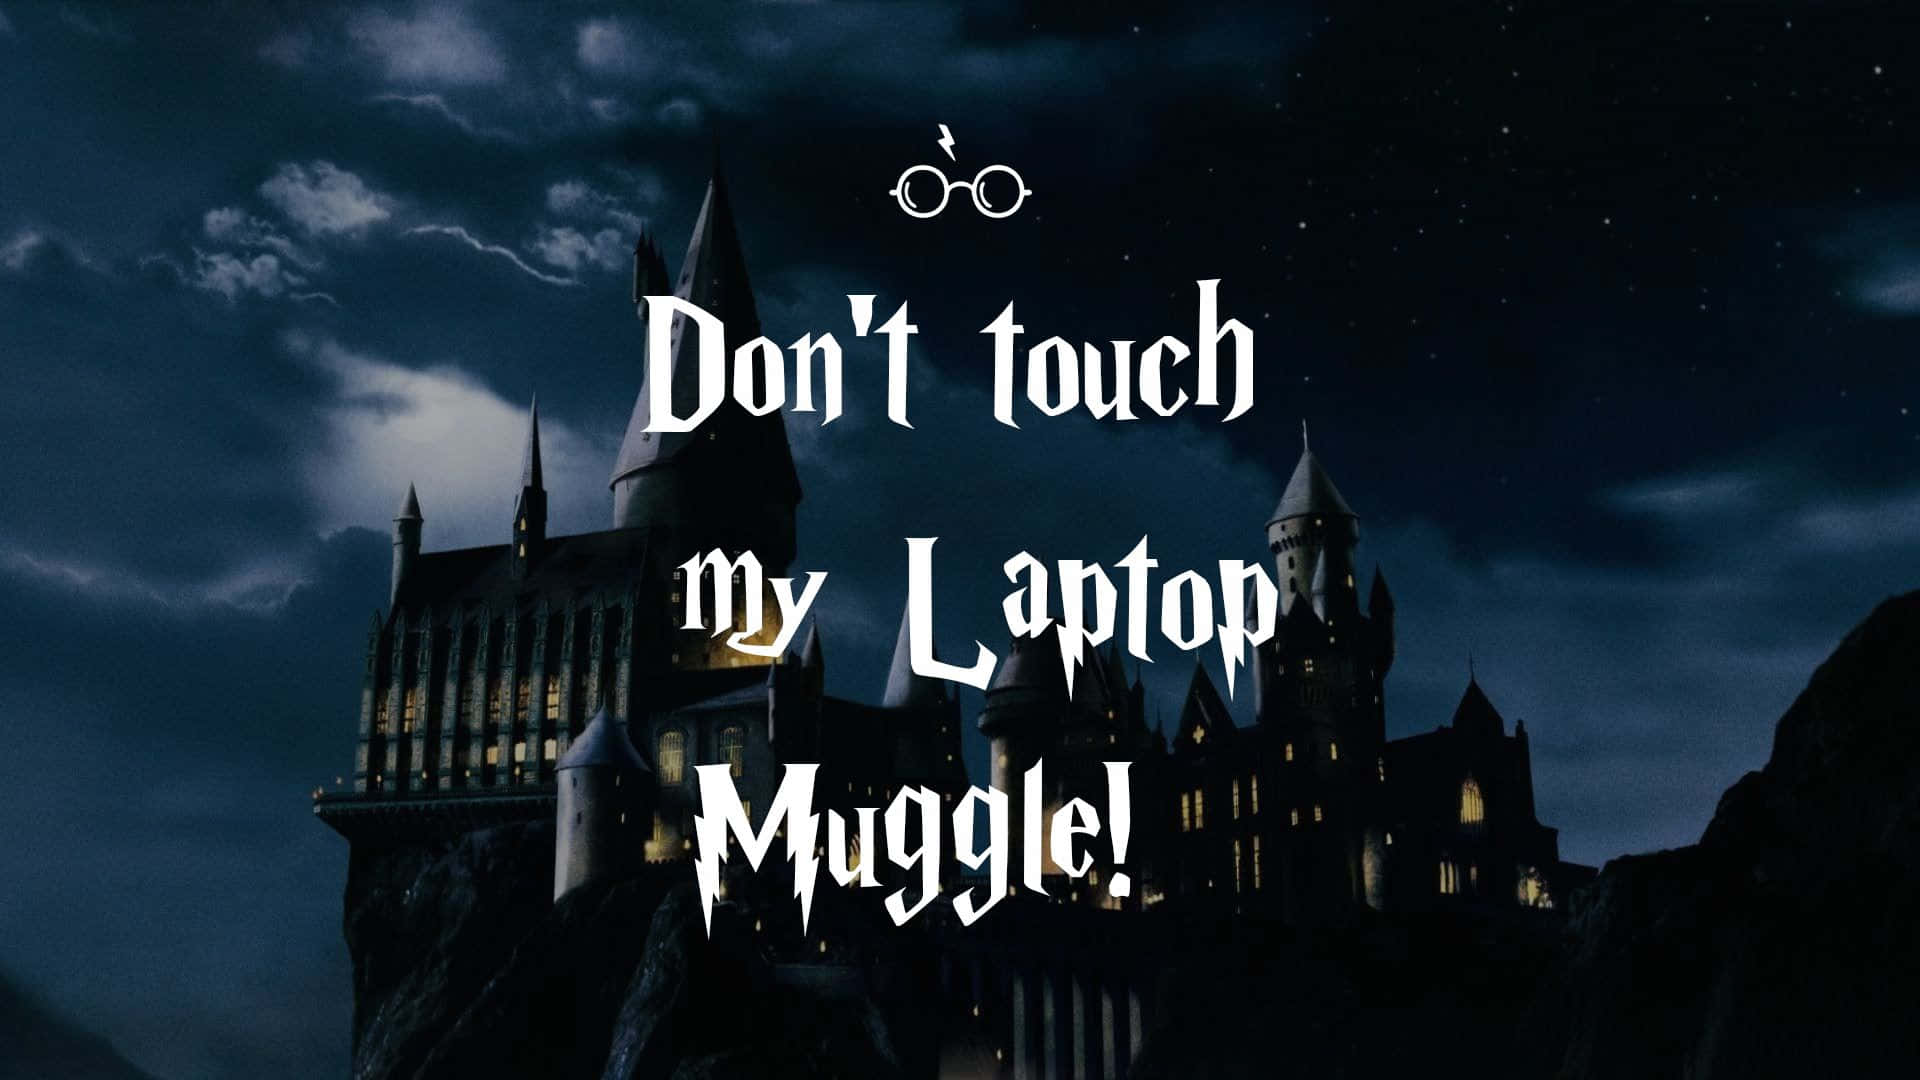 Rörinte Min Laptop, Muggle. Wallpaper